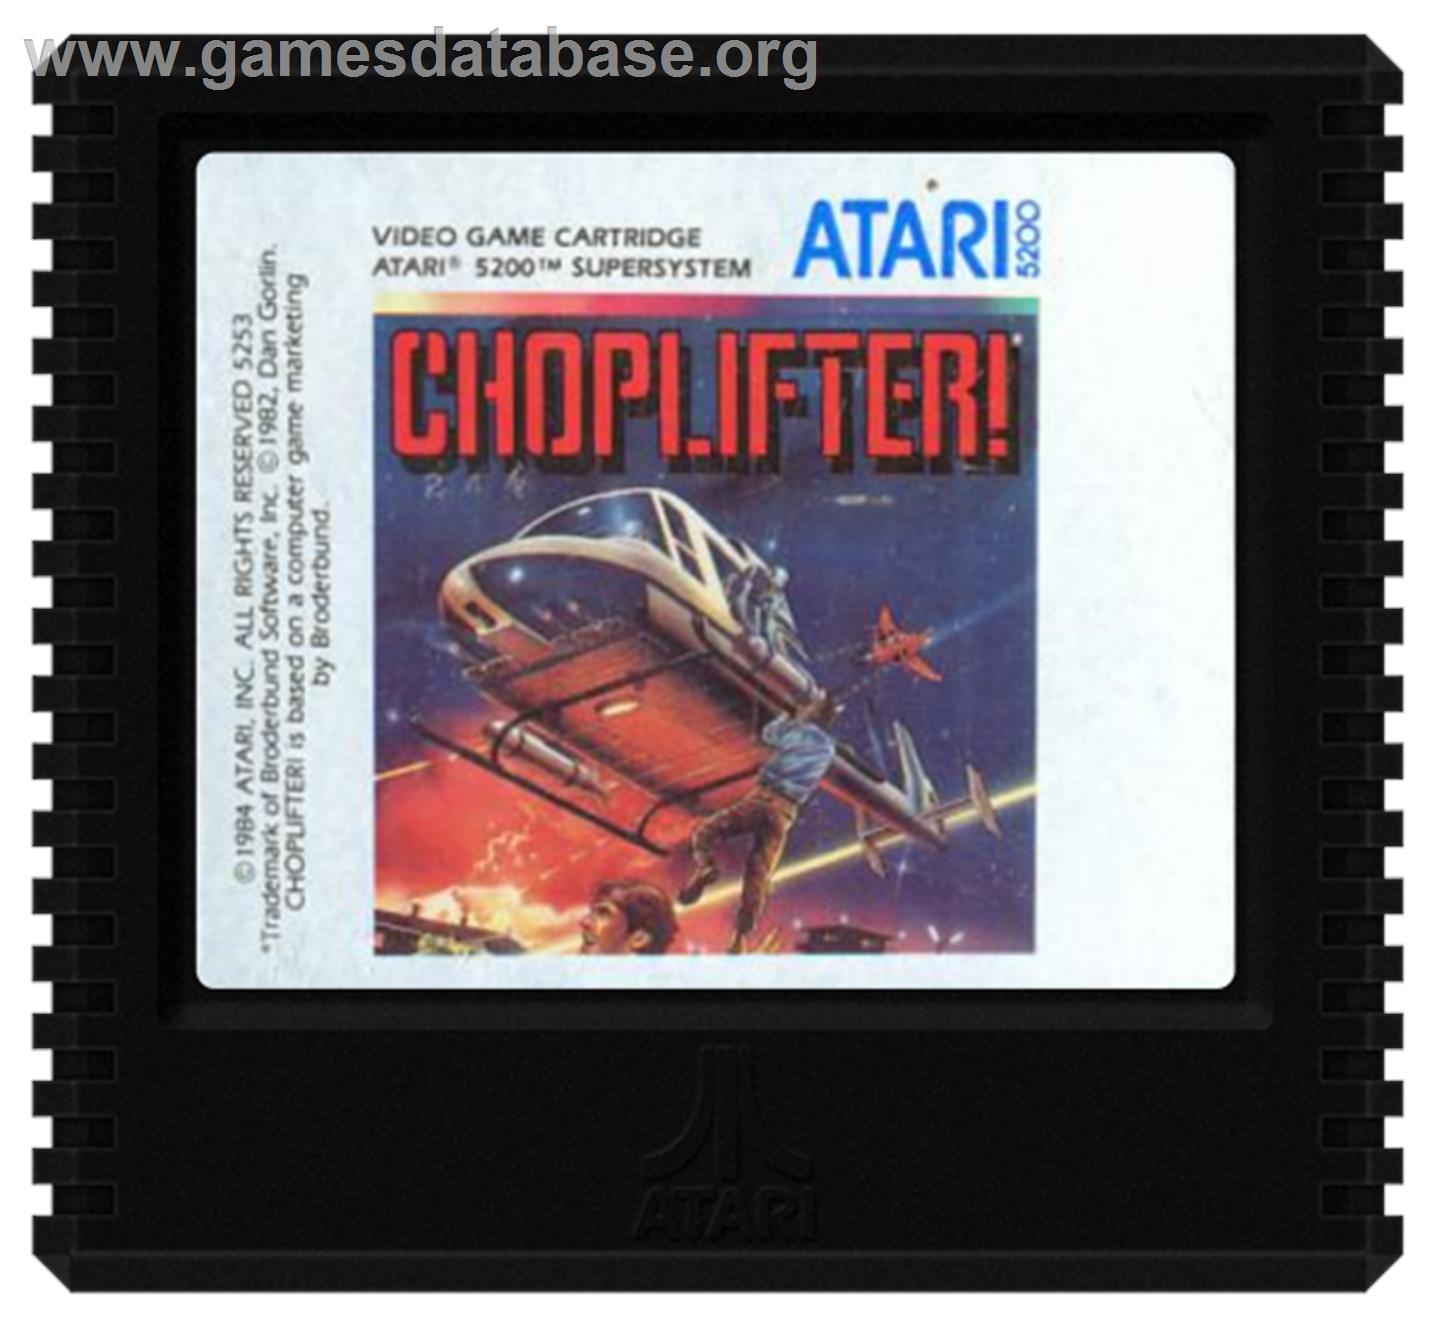 Choplifter - Atari 5200 - Artwork - Cartridge